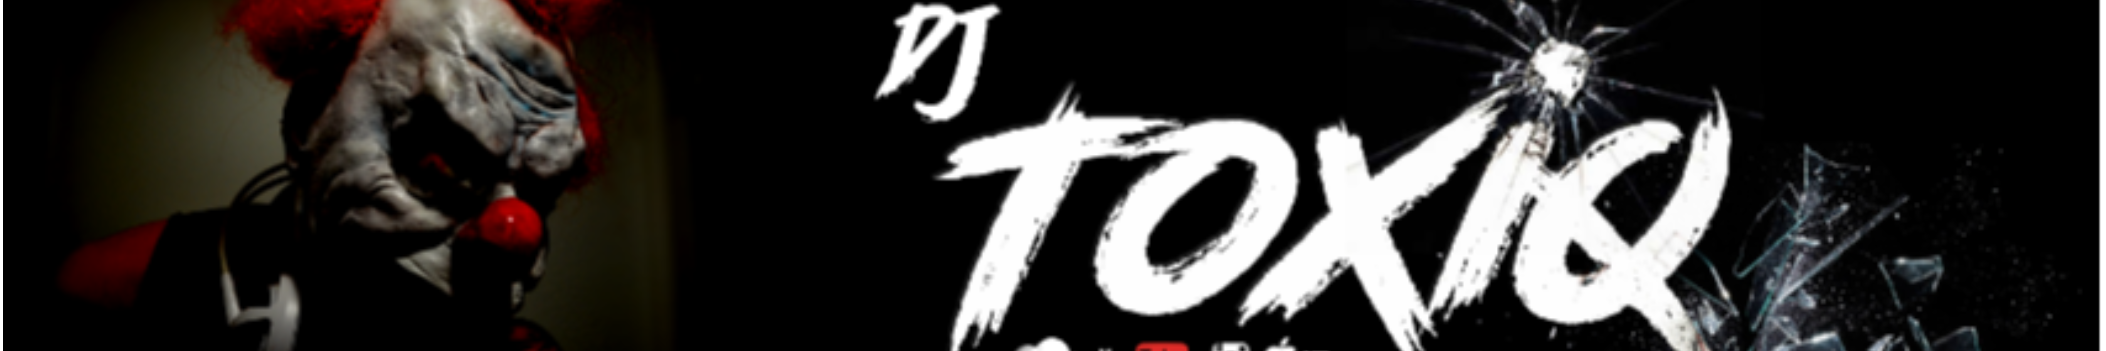 DJ ToXiq